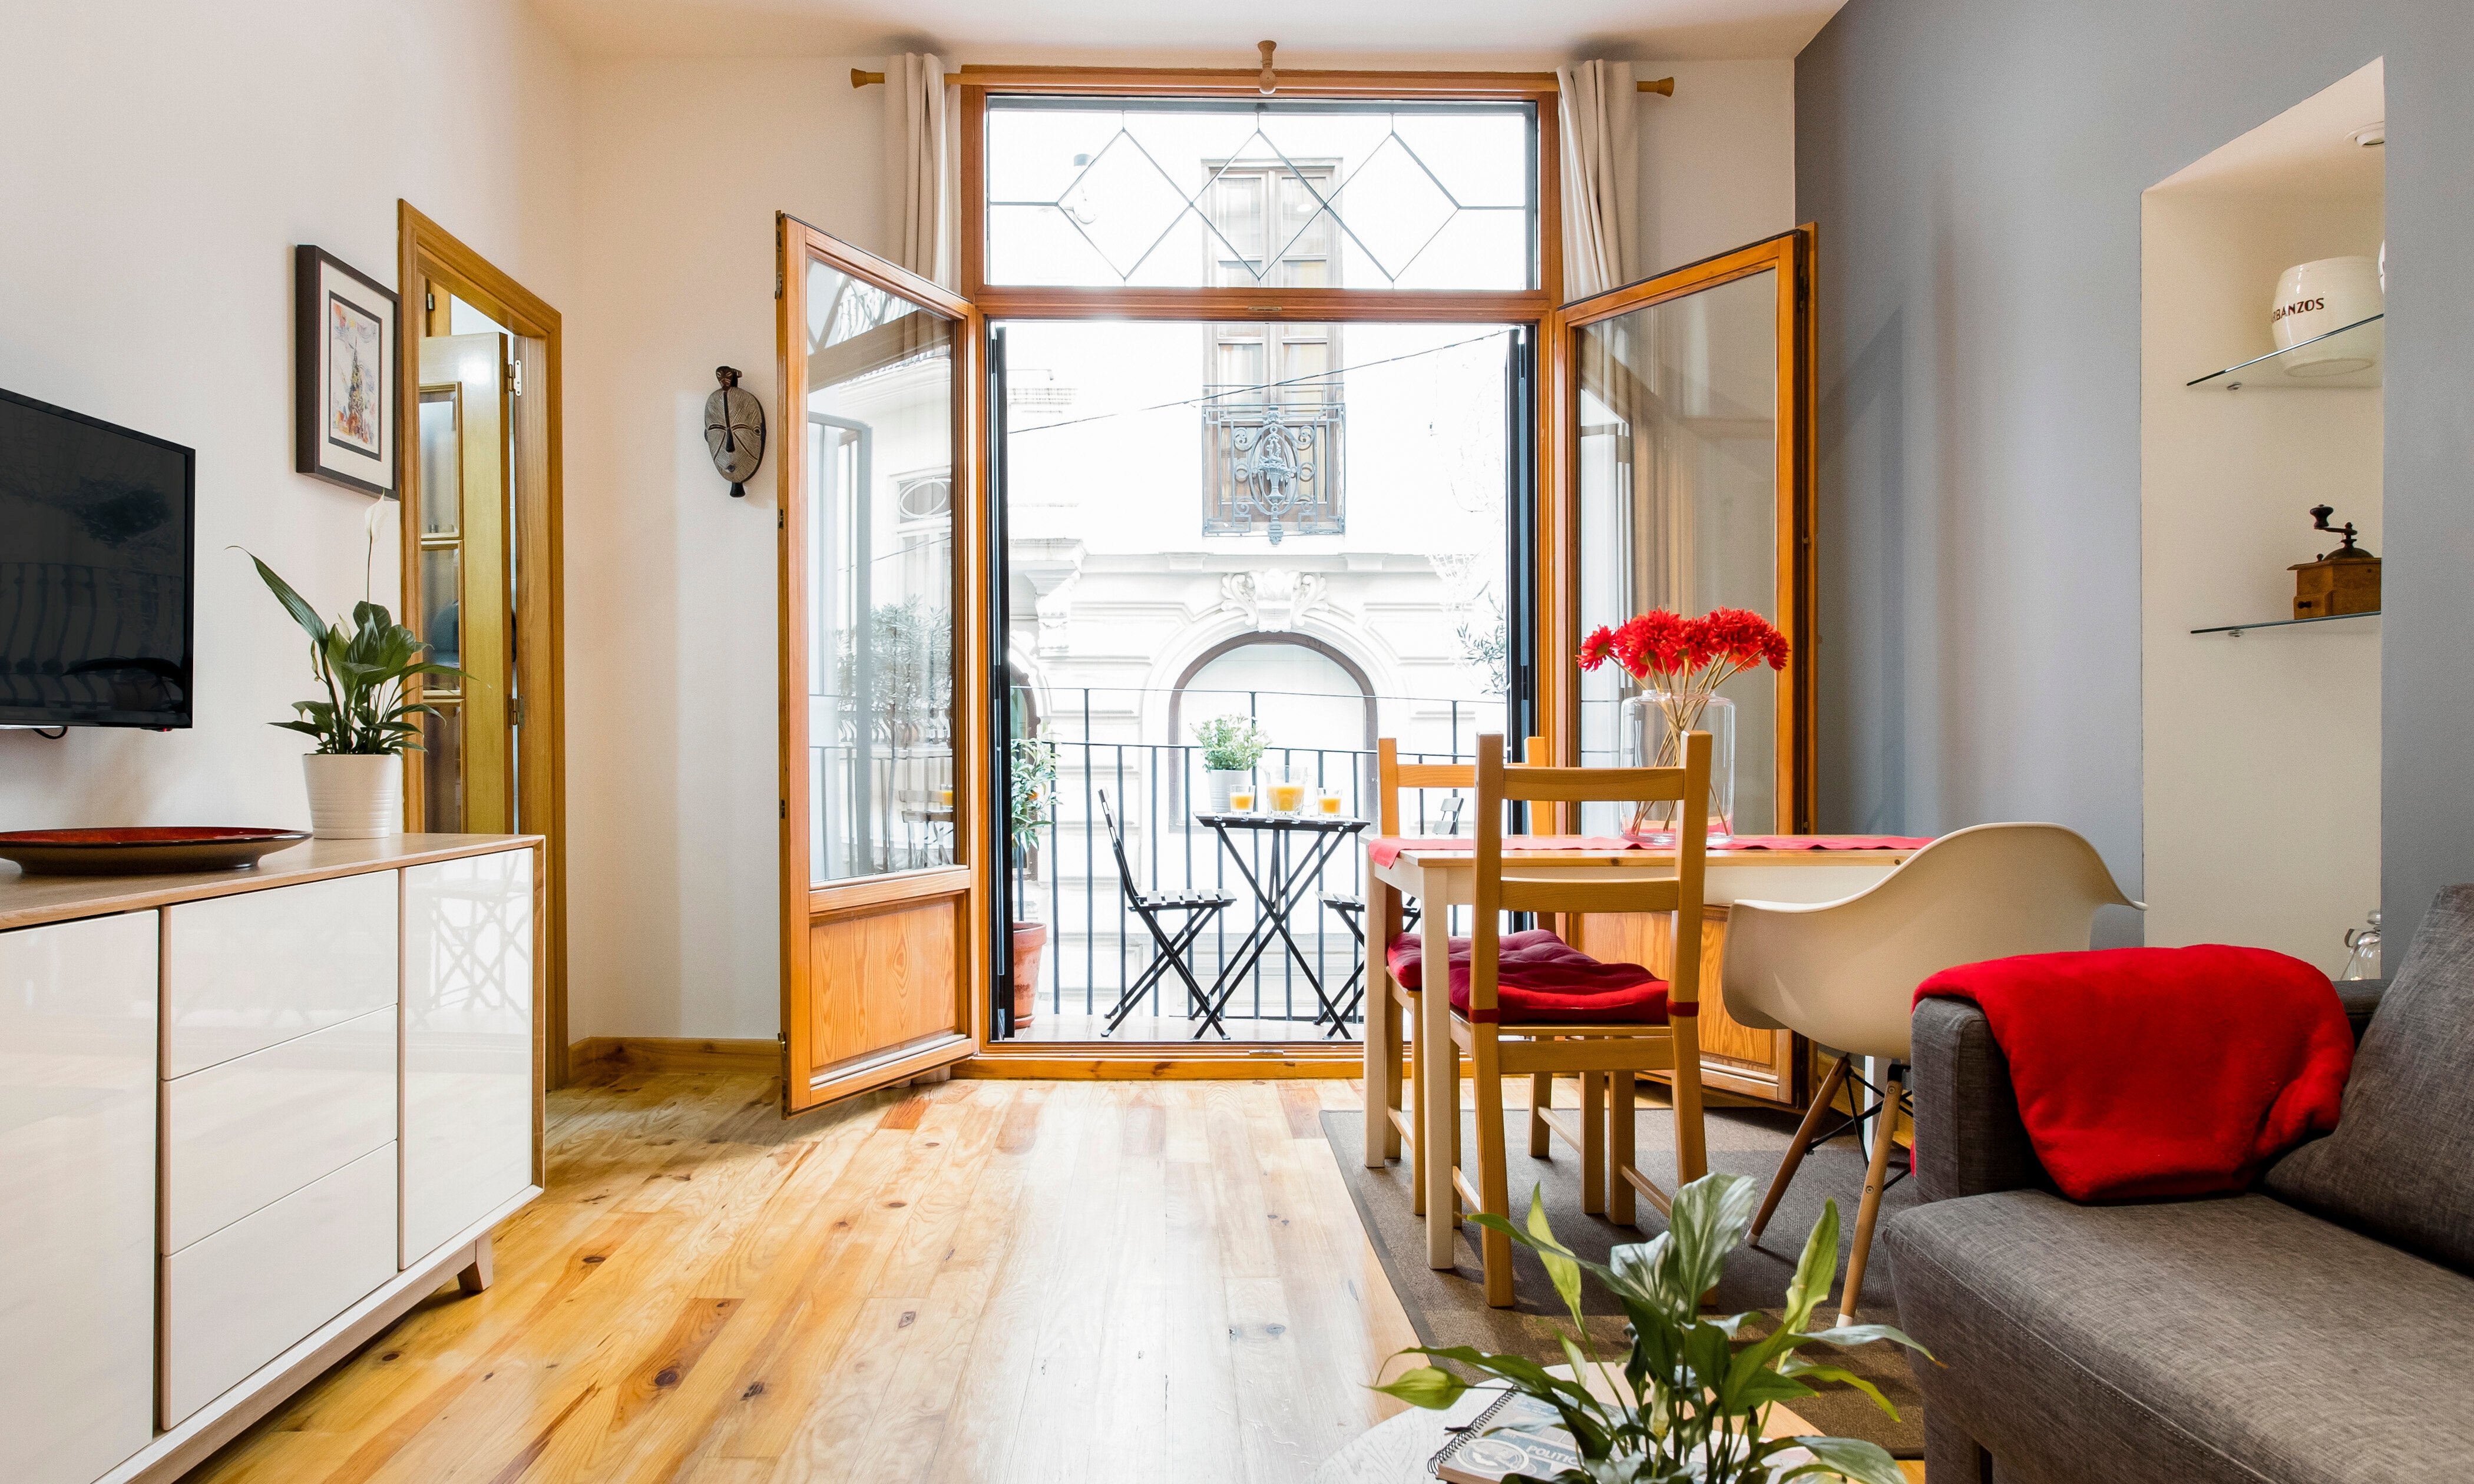 Les reserves en Airbnb en barris sense hotels de Barcelona van reportar 95 milions als amfitrions